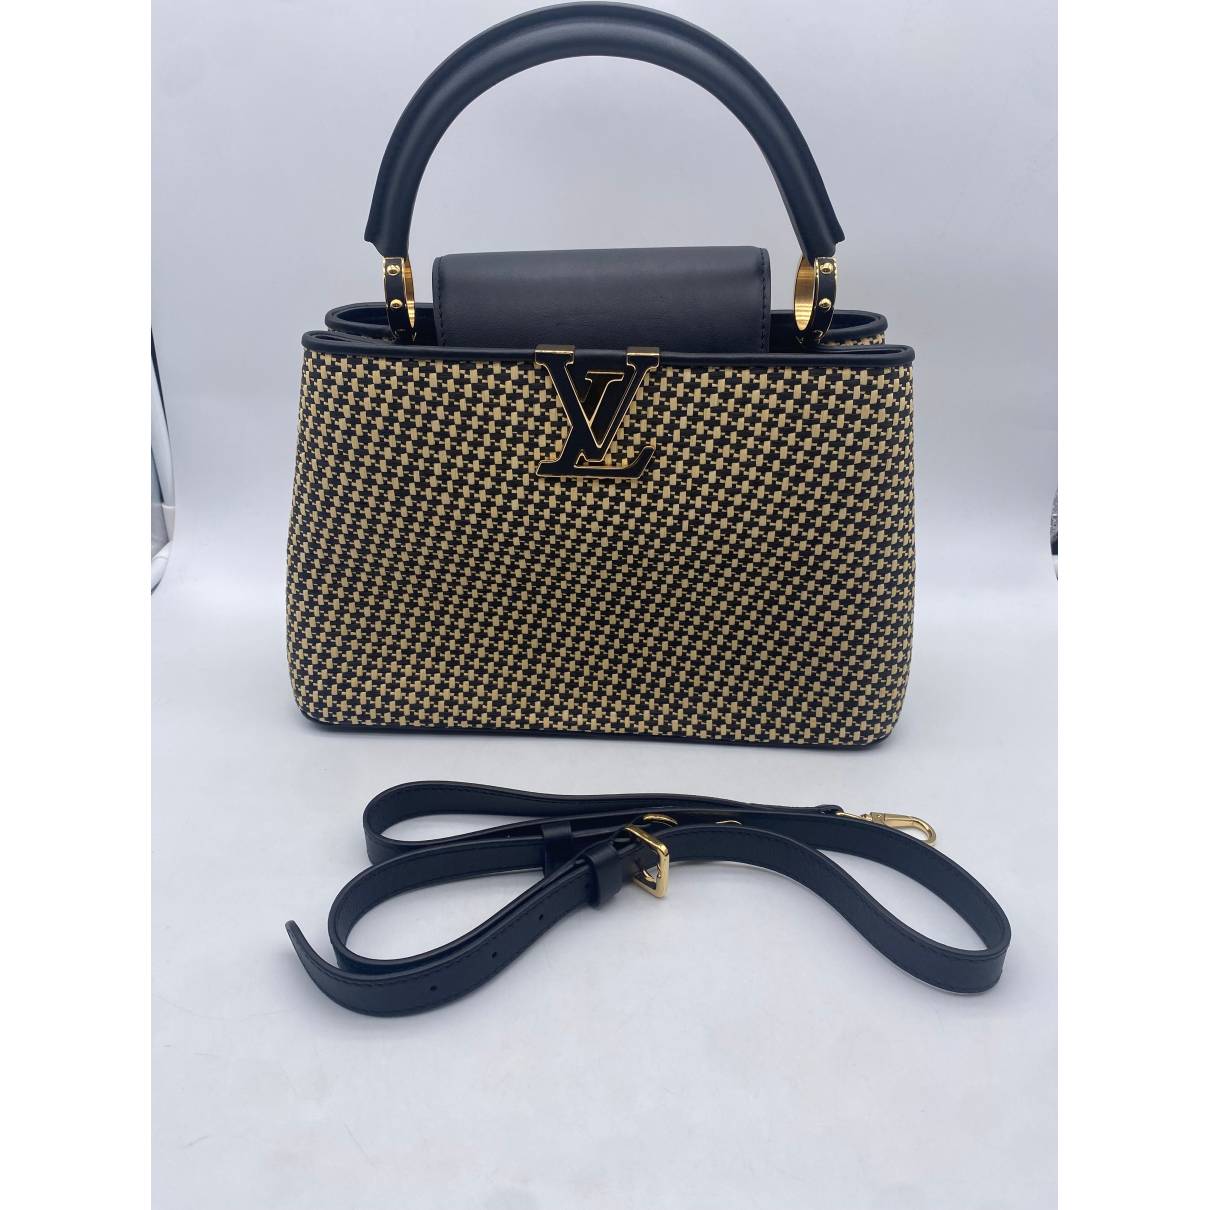 Louis Vuitton Capucine Straw Bag Size 27cm 